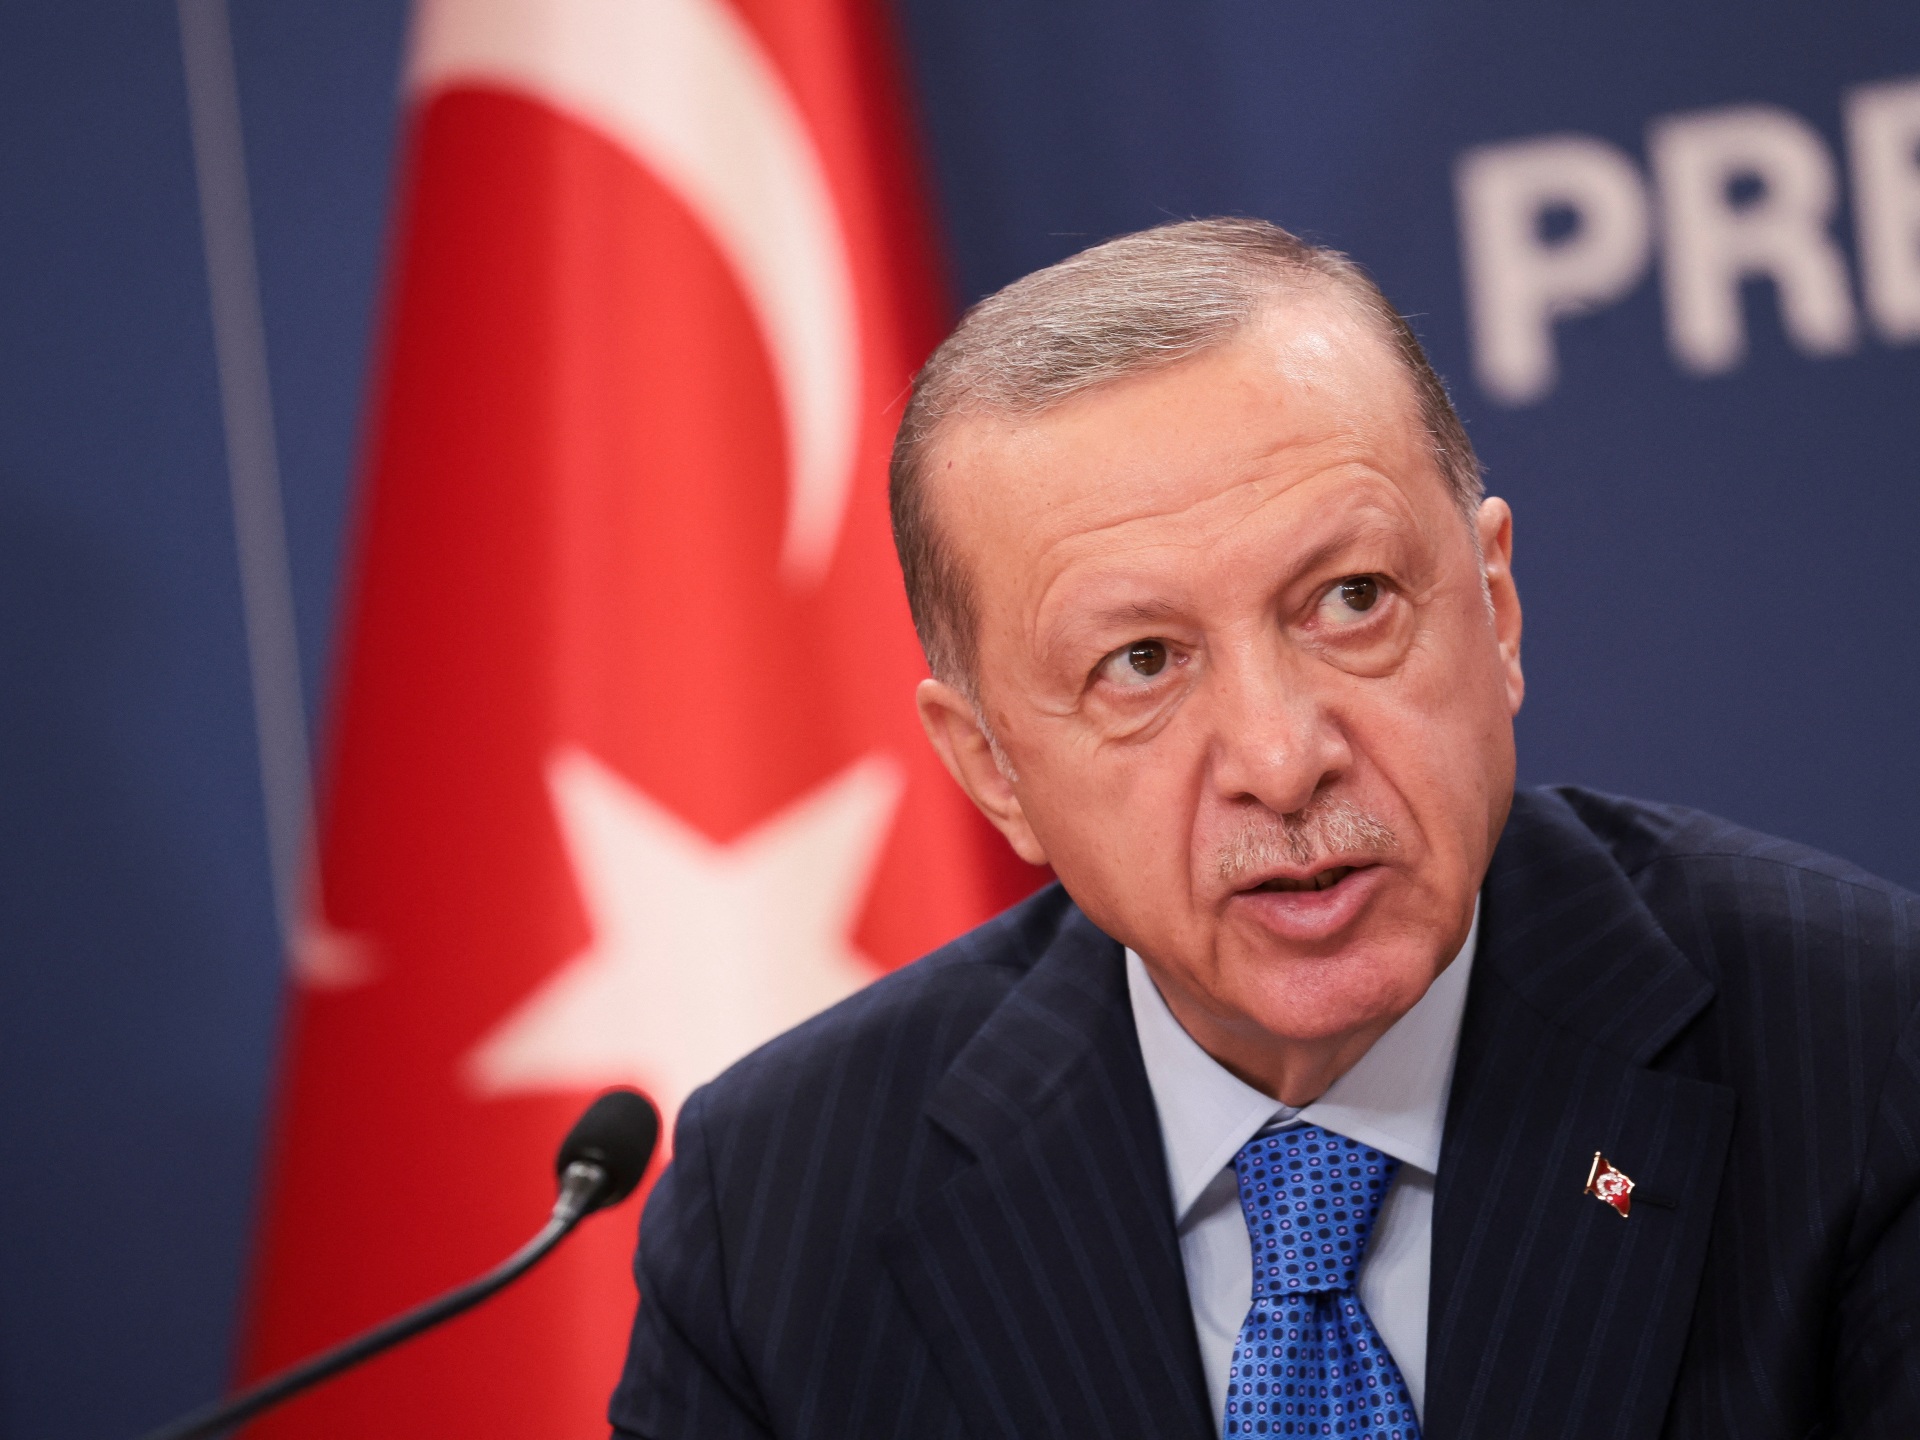 Turkey postpones NATO meeting with Sweden, Finland: State TV